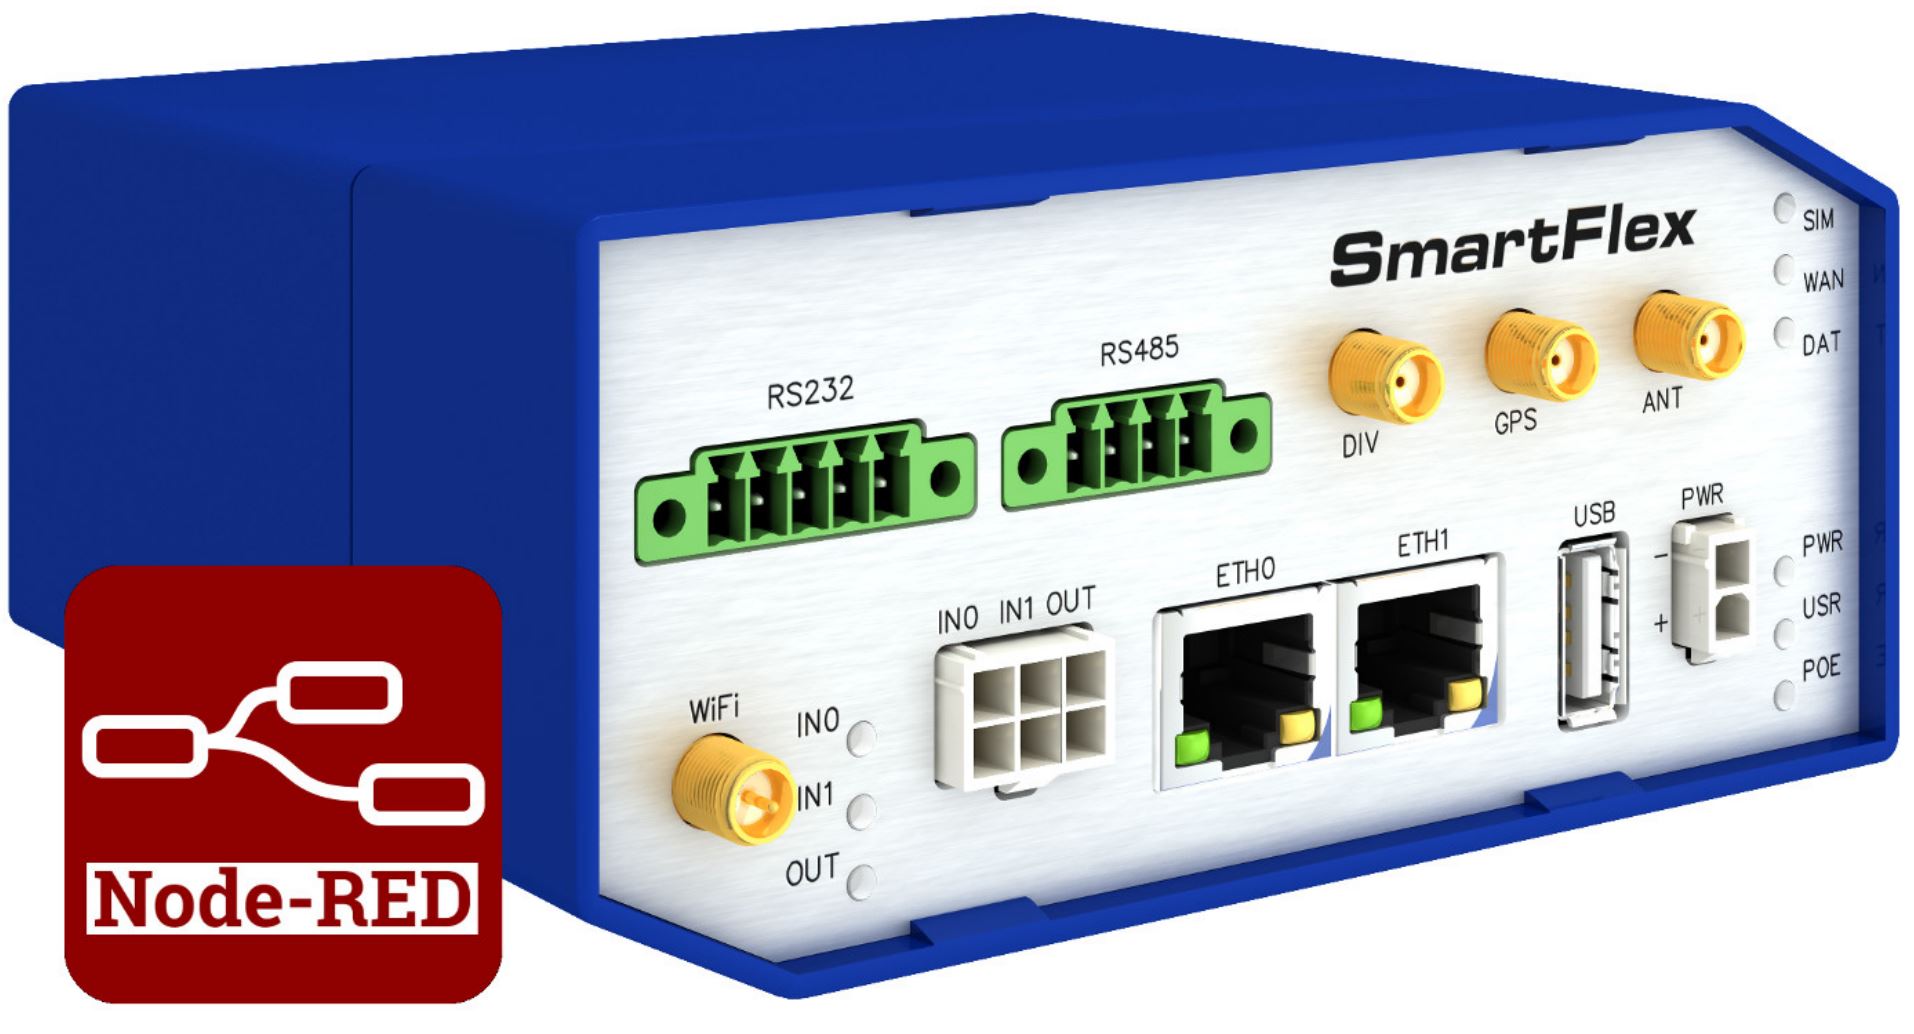 Smartflex Router mit Node-RED